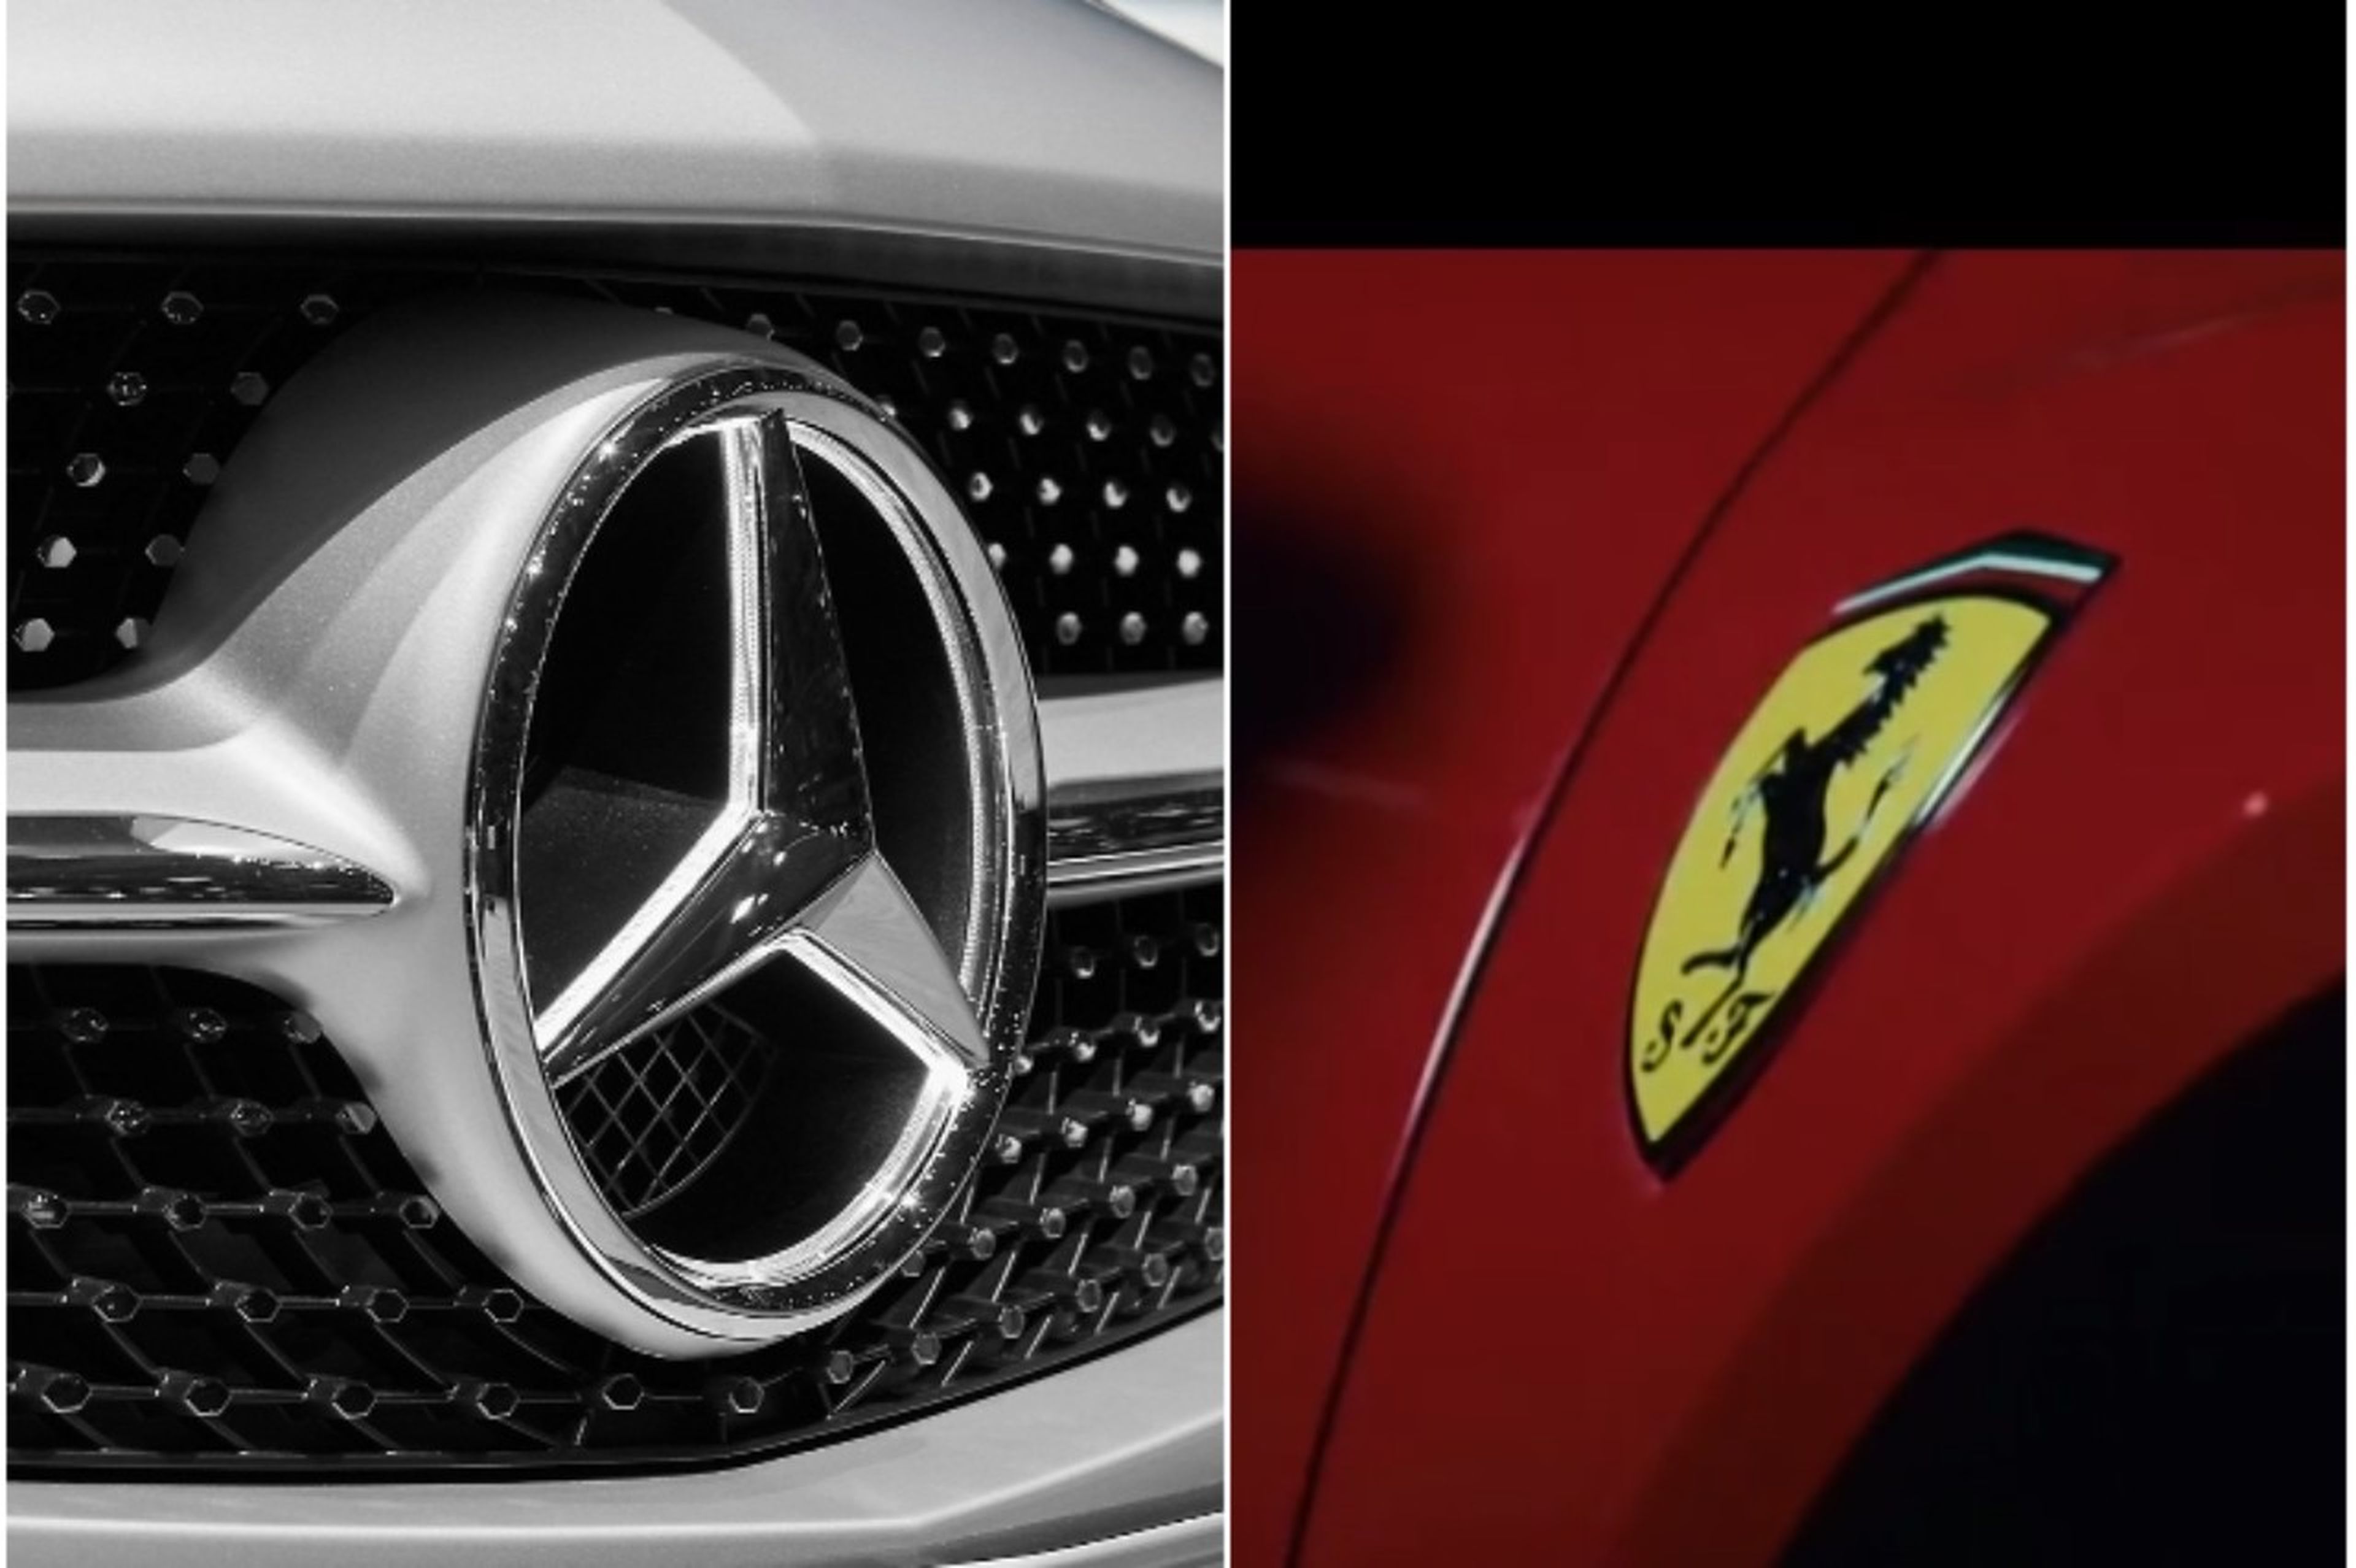 Mercedes o Ferrari, ¿cuál es la marca que más suena en la música?